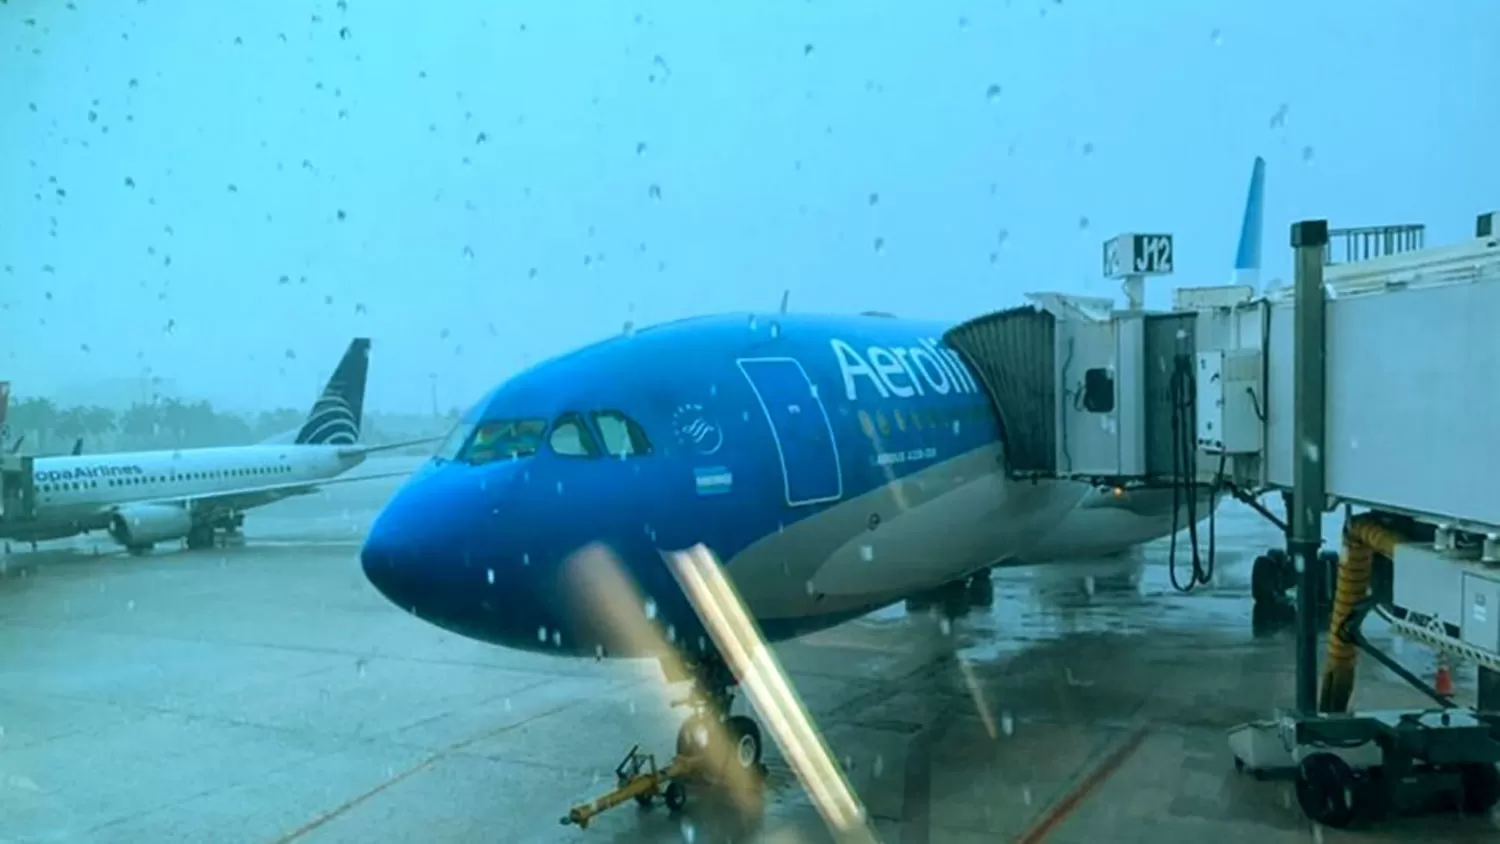 Demoras y vuelos cancelados en el aeropuerto tucumano por una tormenta en Buenos Aires